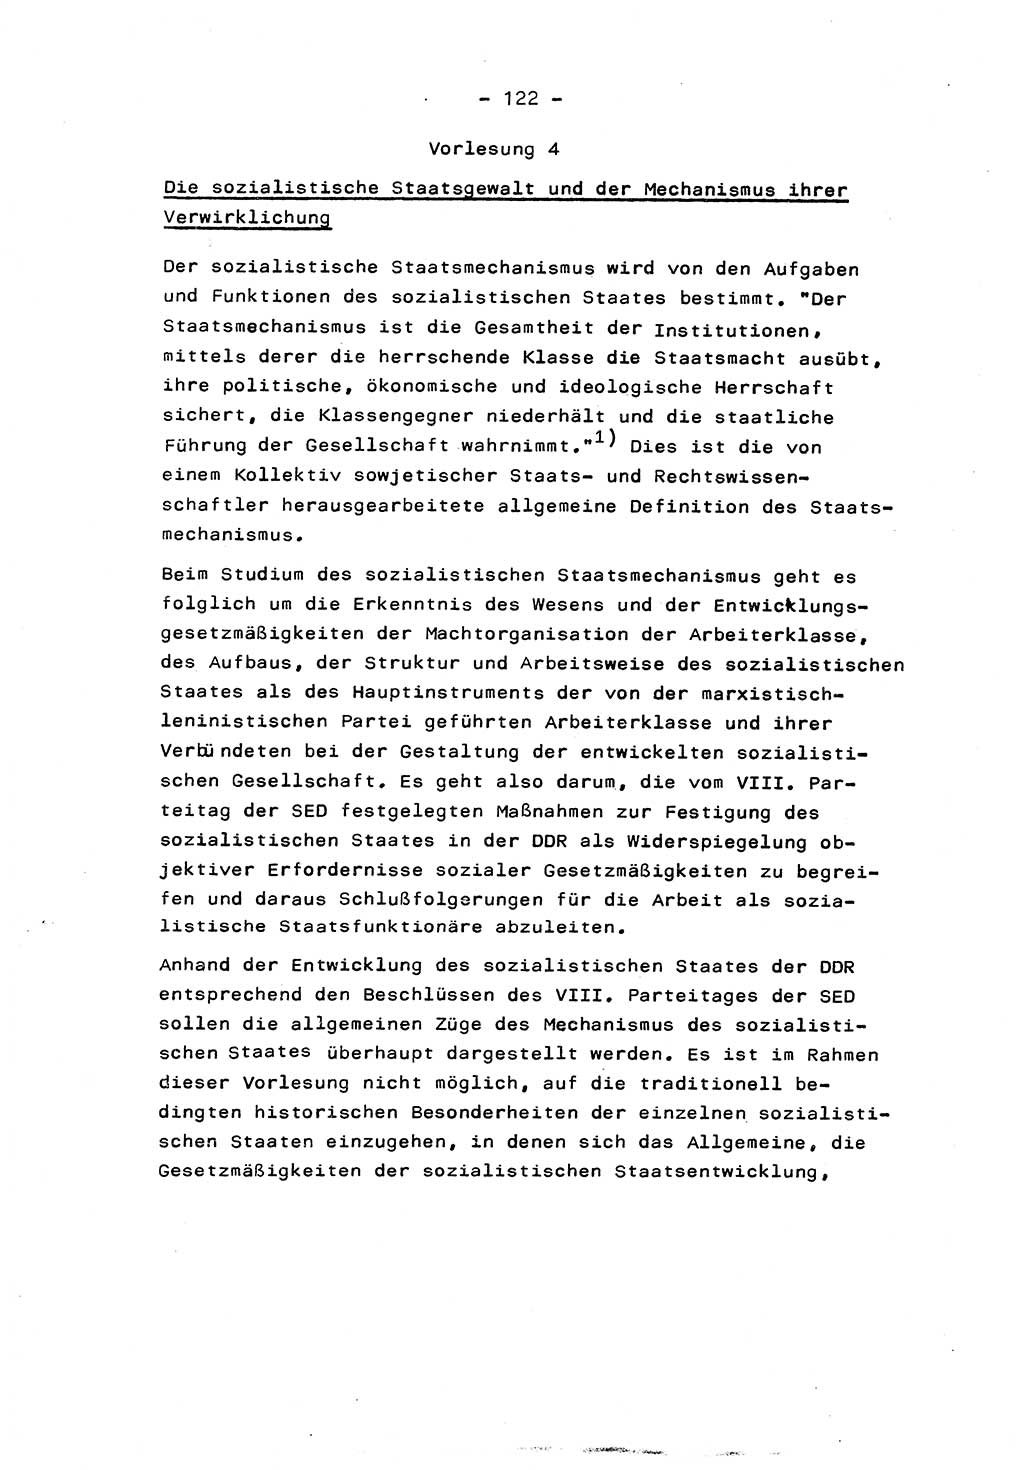 Marxistisch-leninistische Staats- und Rechtstheorie [Deutsche Demokratische Republik (DDR)] 1975, Seite 122 (ML St.-R.-Th. DDR 1975, S. 122)